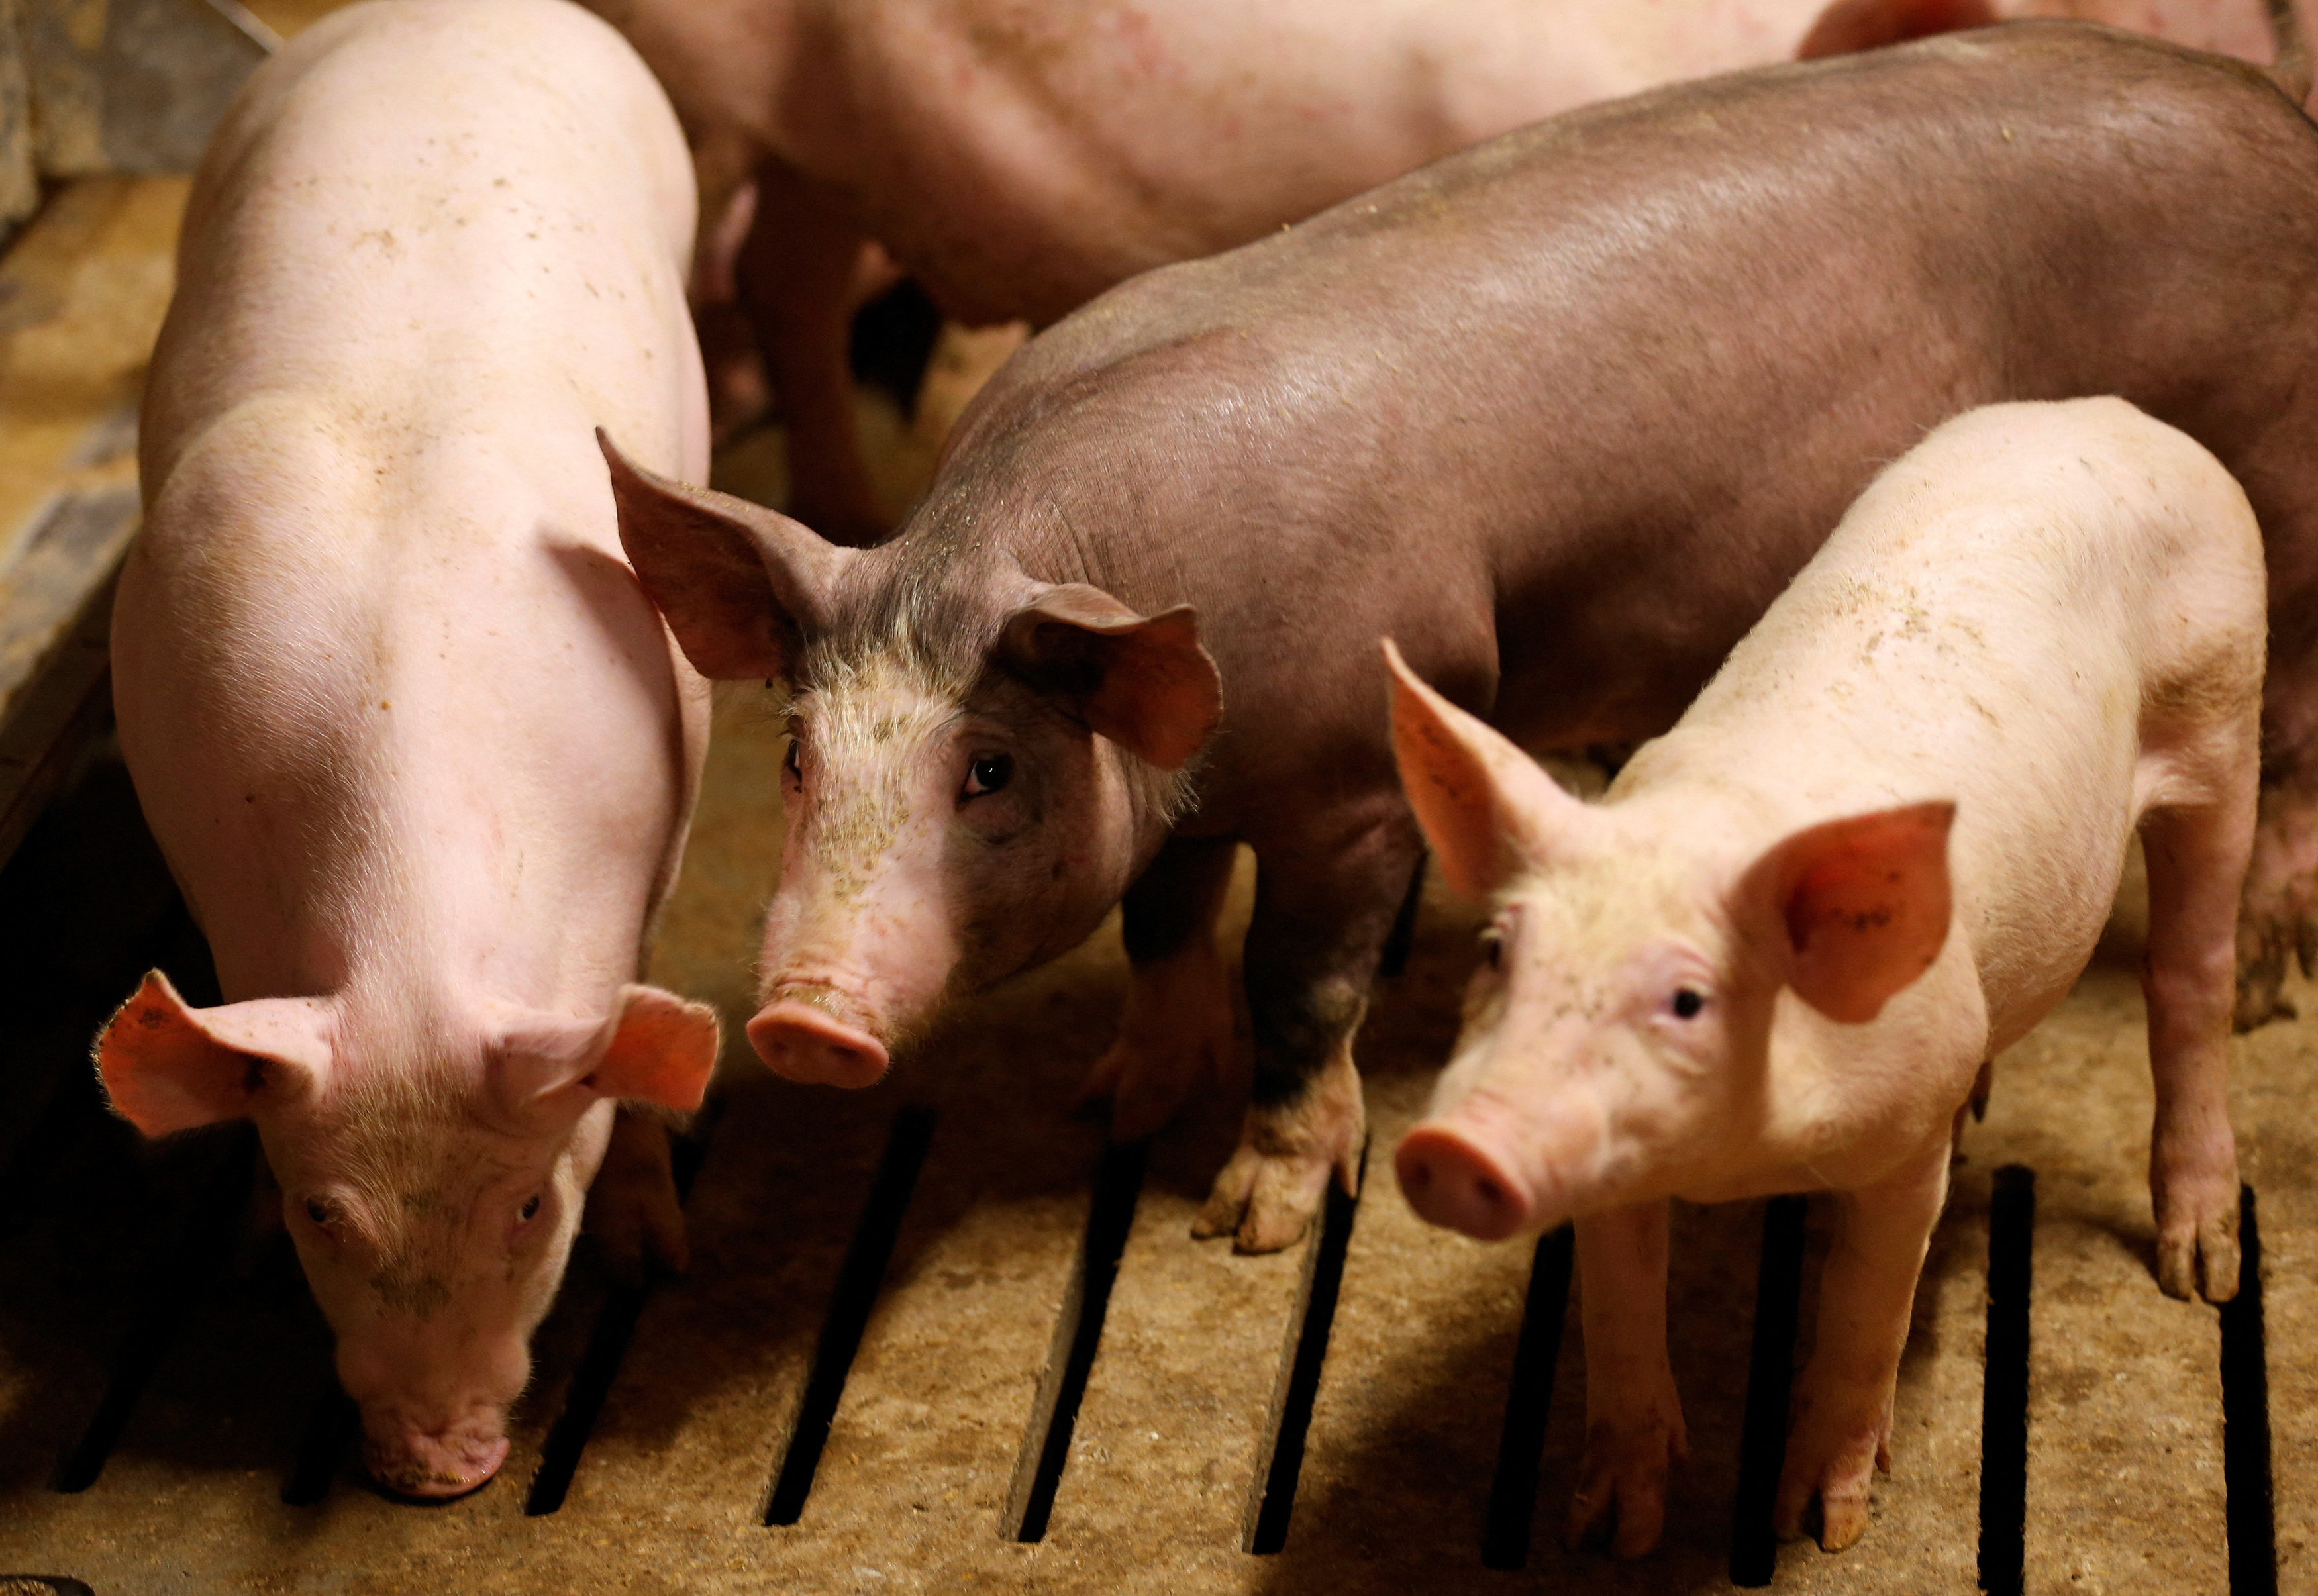 中国、豚内臓肉などの輸入で仏と合意　鳥インフル巡る禁輸も緩和